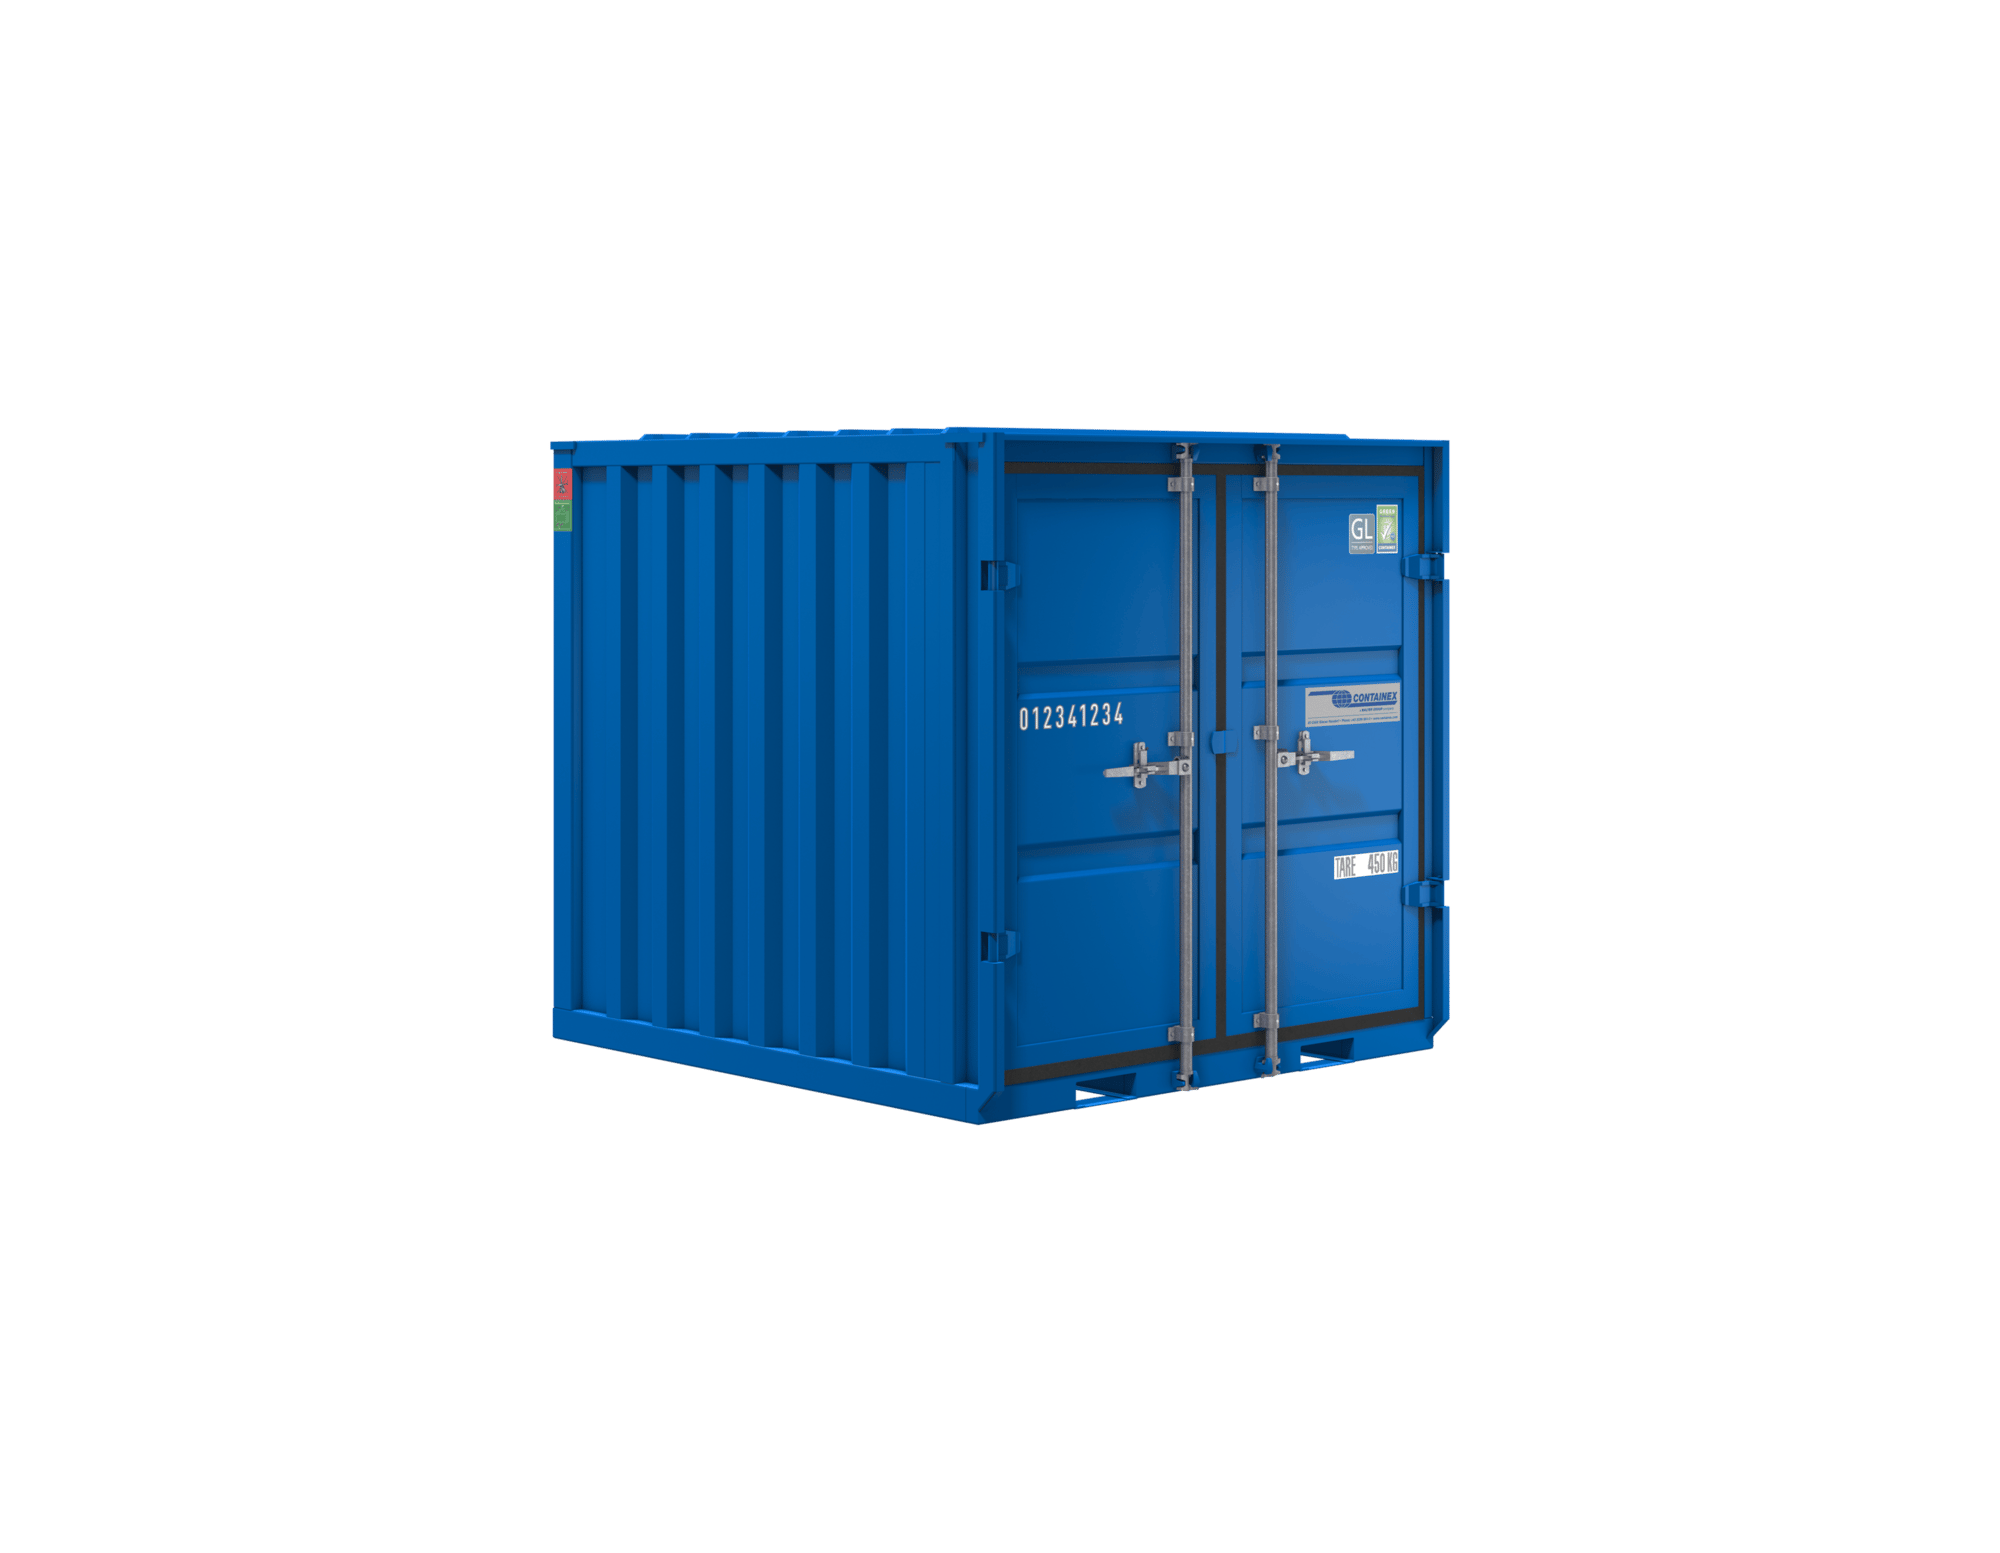 6’ Skladiščni kontejner